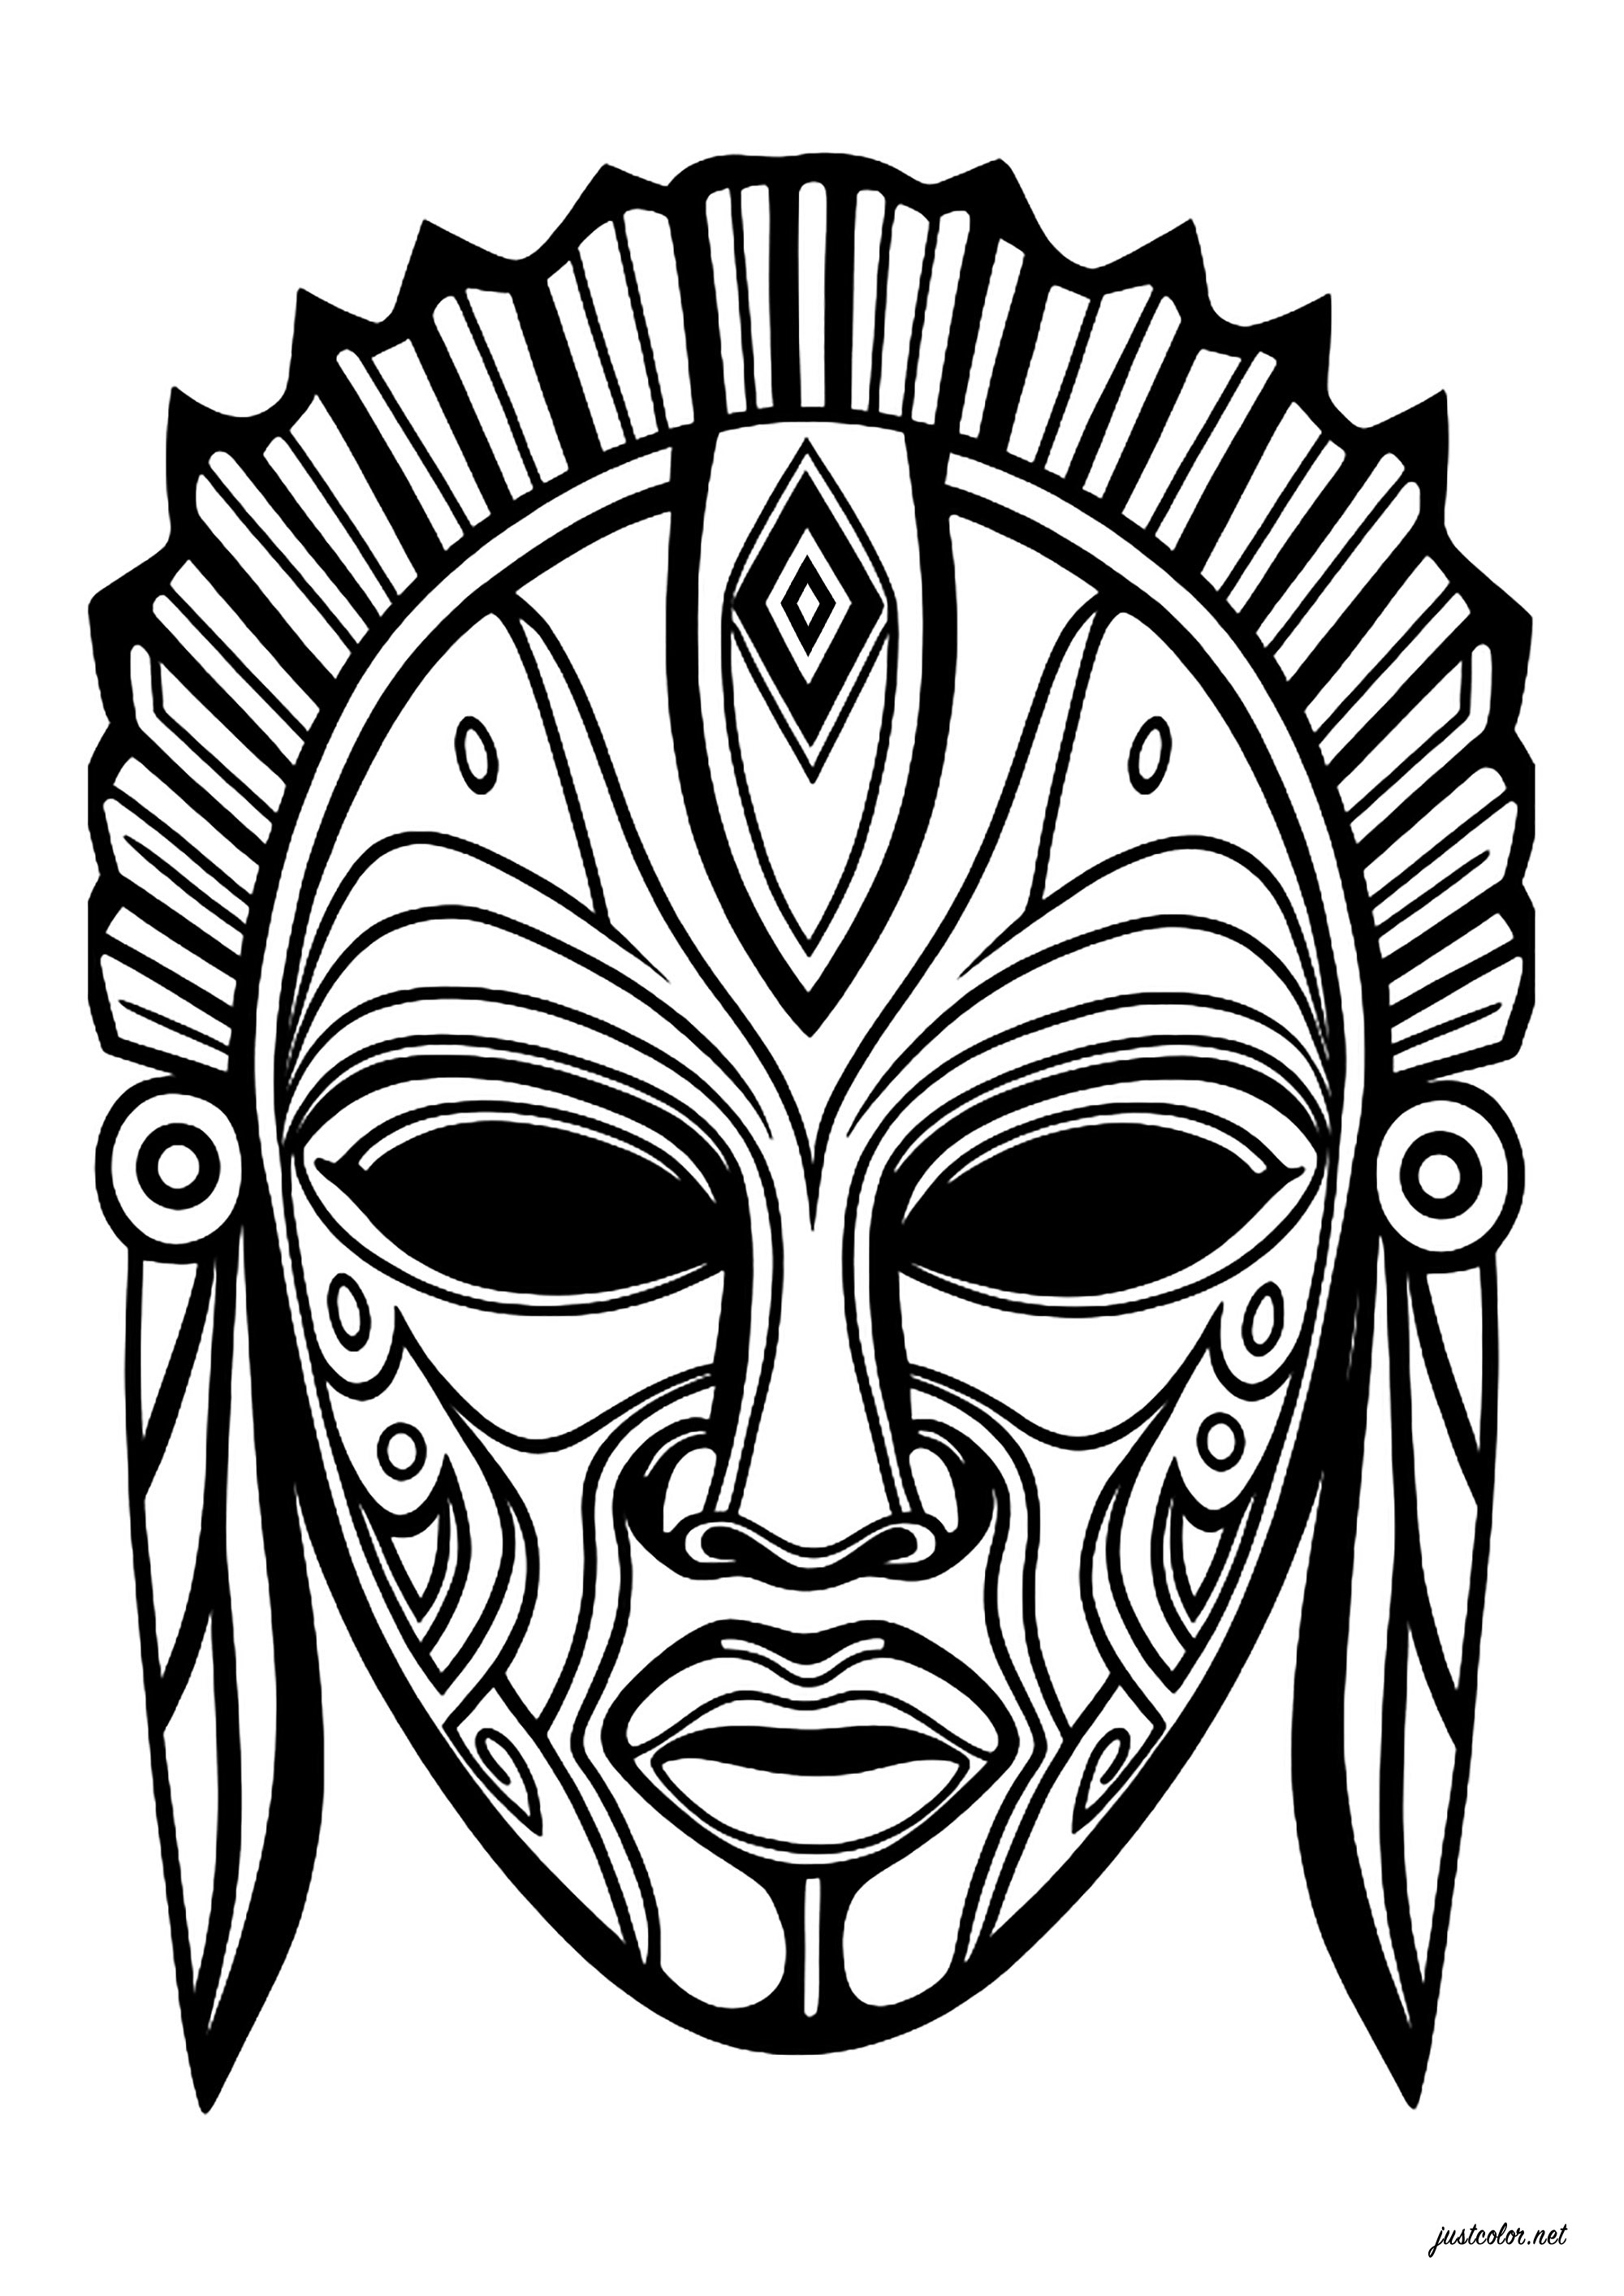 Masque imaginaire, inspiré des masques africains. Nombreux motifs intérieurs, permettant de colorier le masque avec de nombreuses couleurs